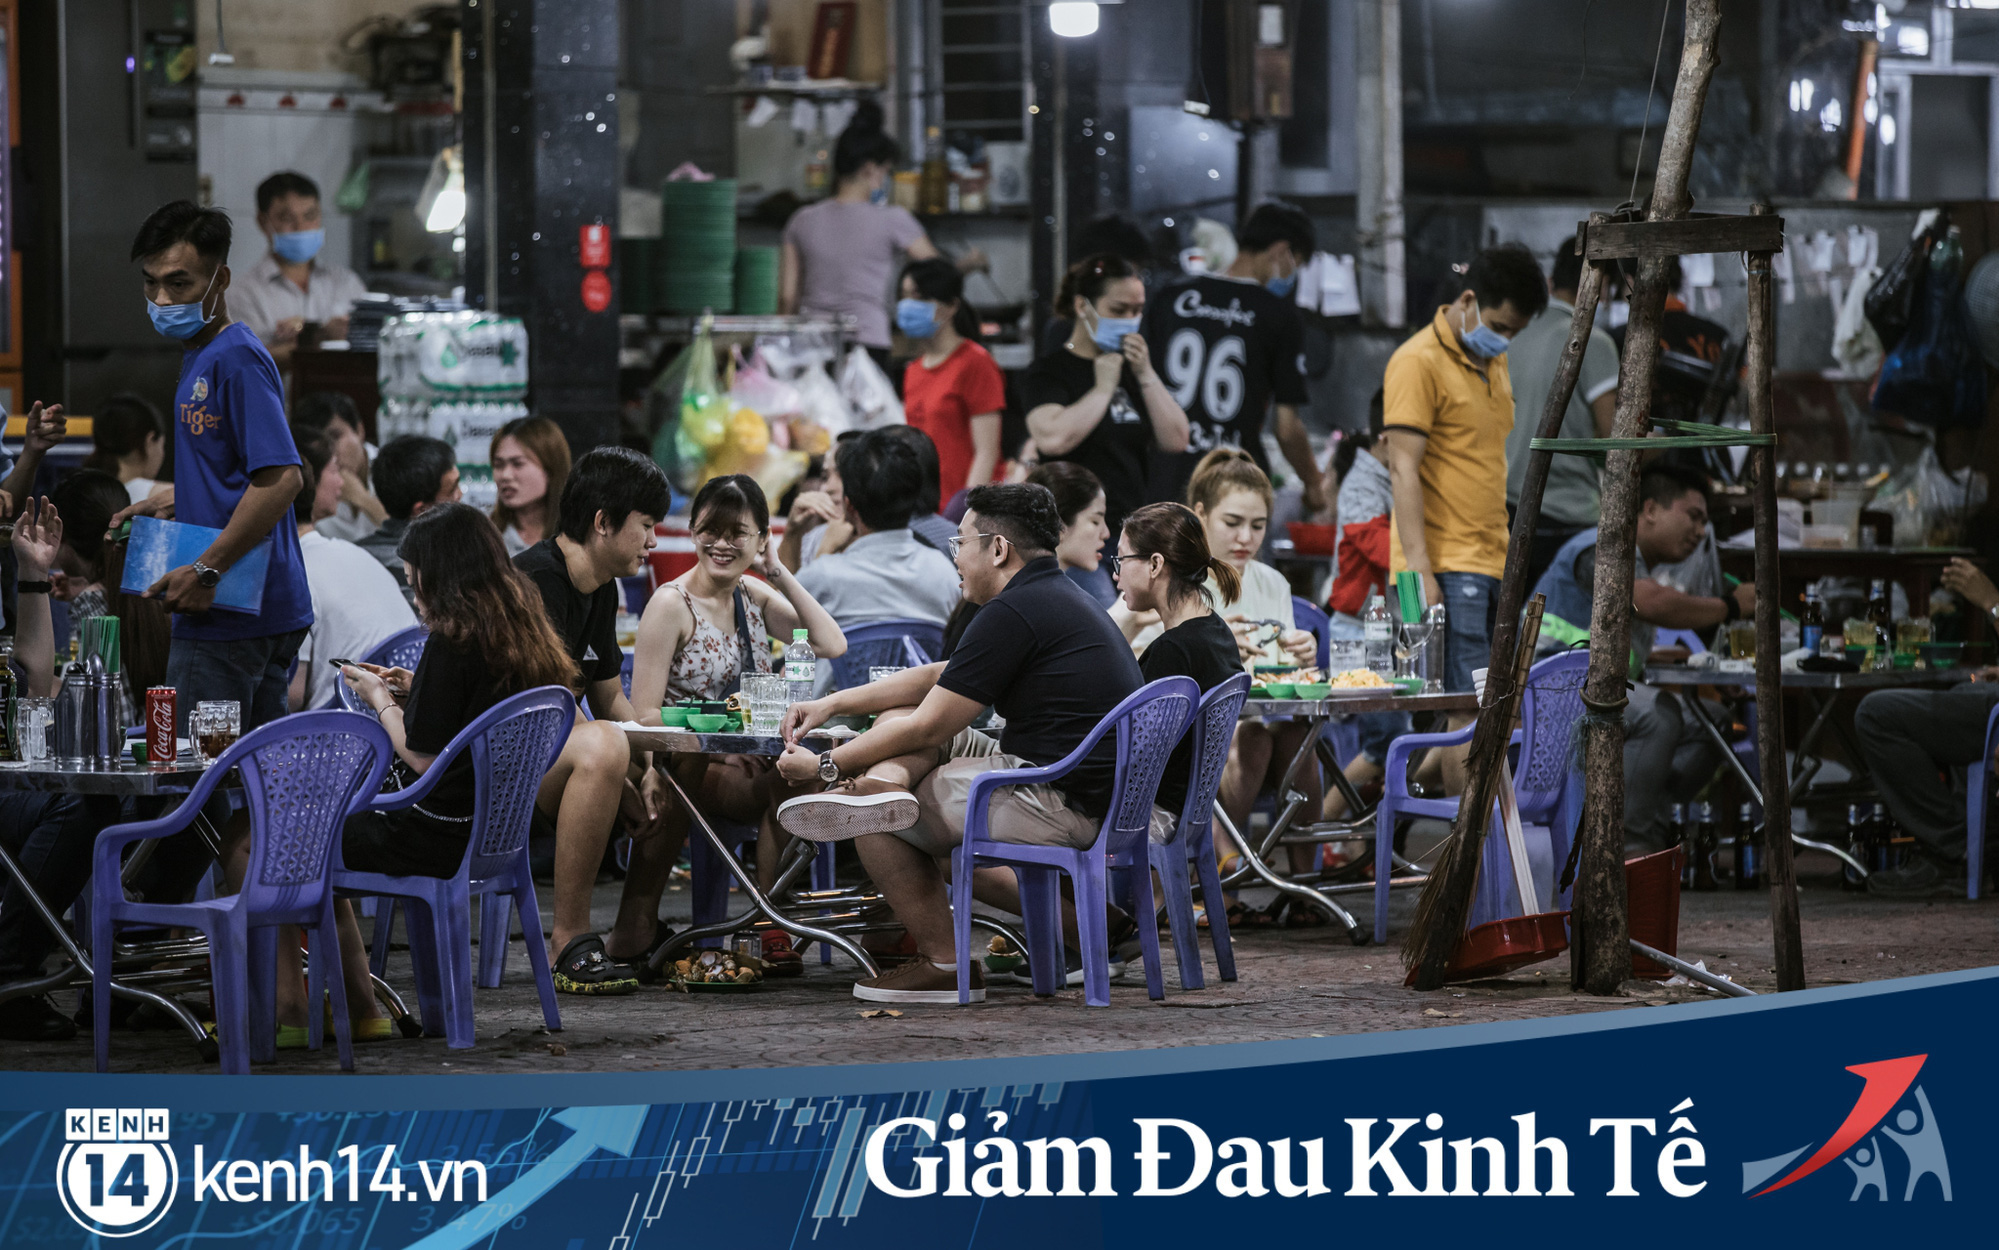 Ngày cuối tuần sau nới lỏng giãn cách xã hội: Quán xá Sài Gòn đông đúc, hàng quán bán mỏi tay không kịp nghỉ